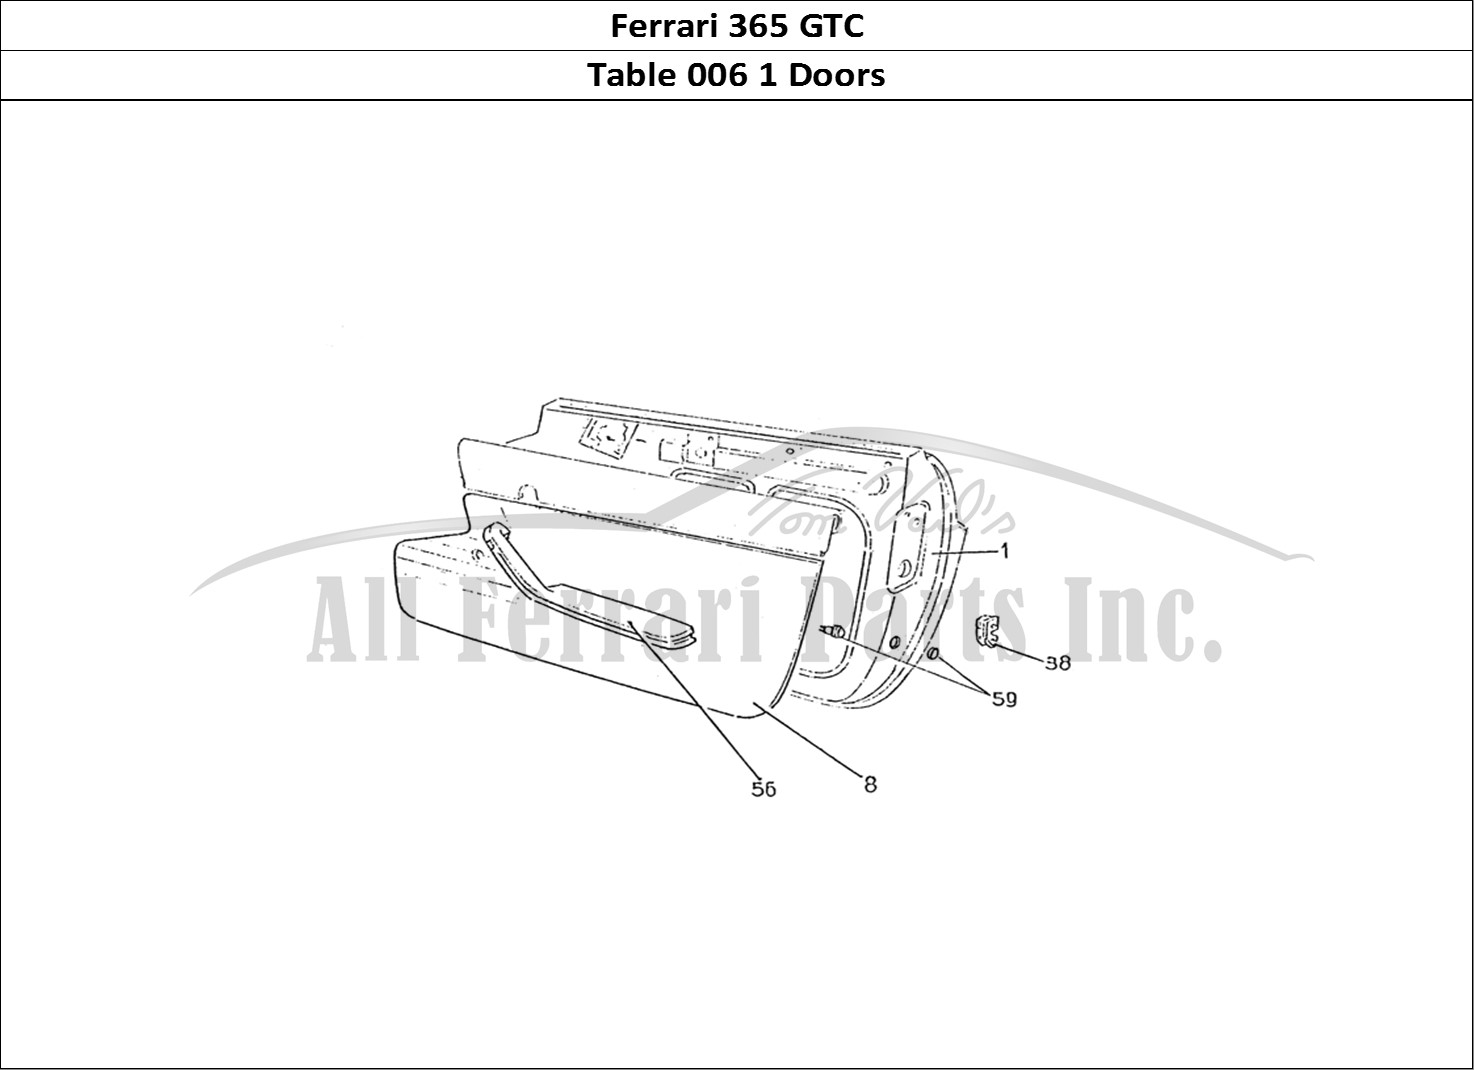 Ferrari Parts Ferrari 330 GTC (Coachwork) Page 006 Doors (Edizione 1)